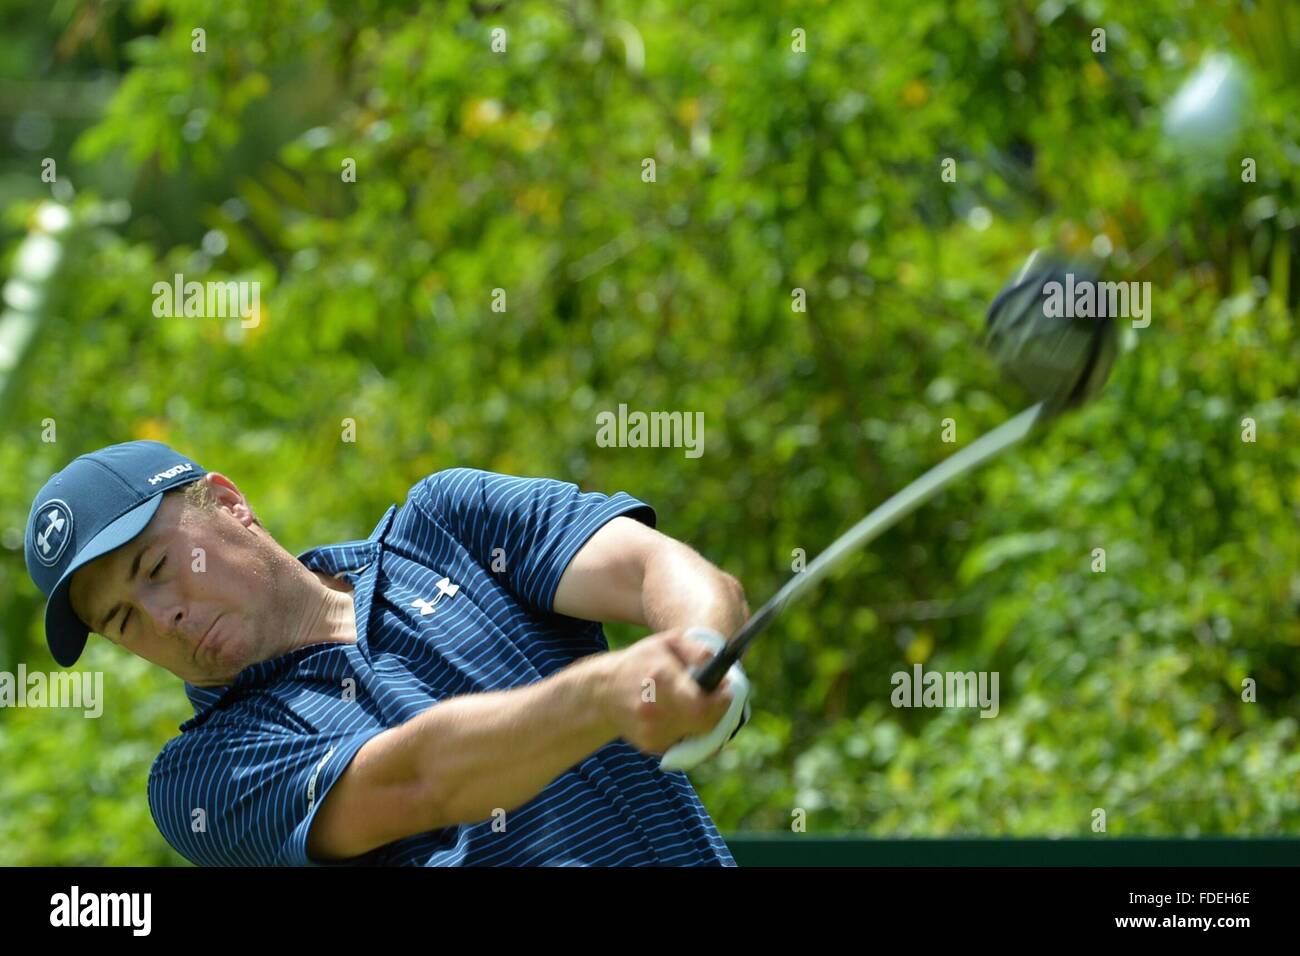 Singapur. 31. Januar 2016. Jordan Spieth der Vereinigten Staaten Abschläge aus während der SMBC Singapur Open in Singapur Sentosa Golfclub Serapong Kurs, 31. Januar 2016 statt. © Dahin Chih Wey/Xinhua/Alamy Live-Nachrichten Stockfoto